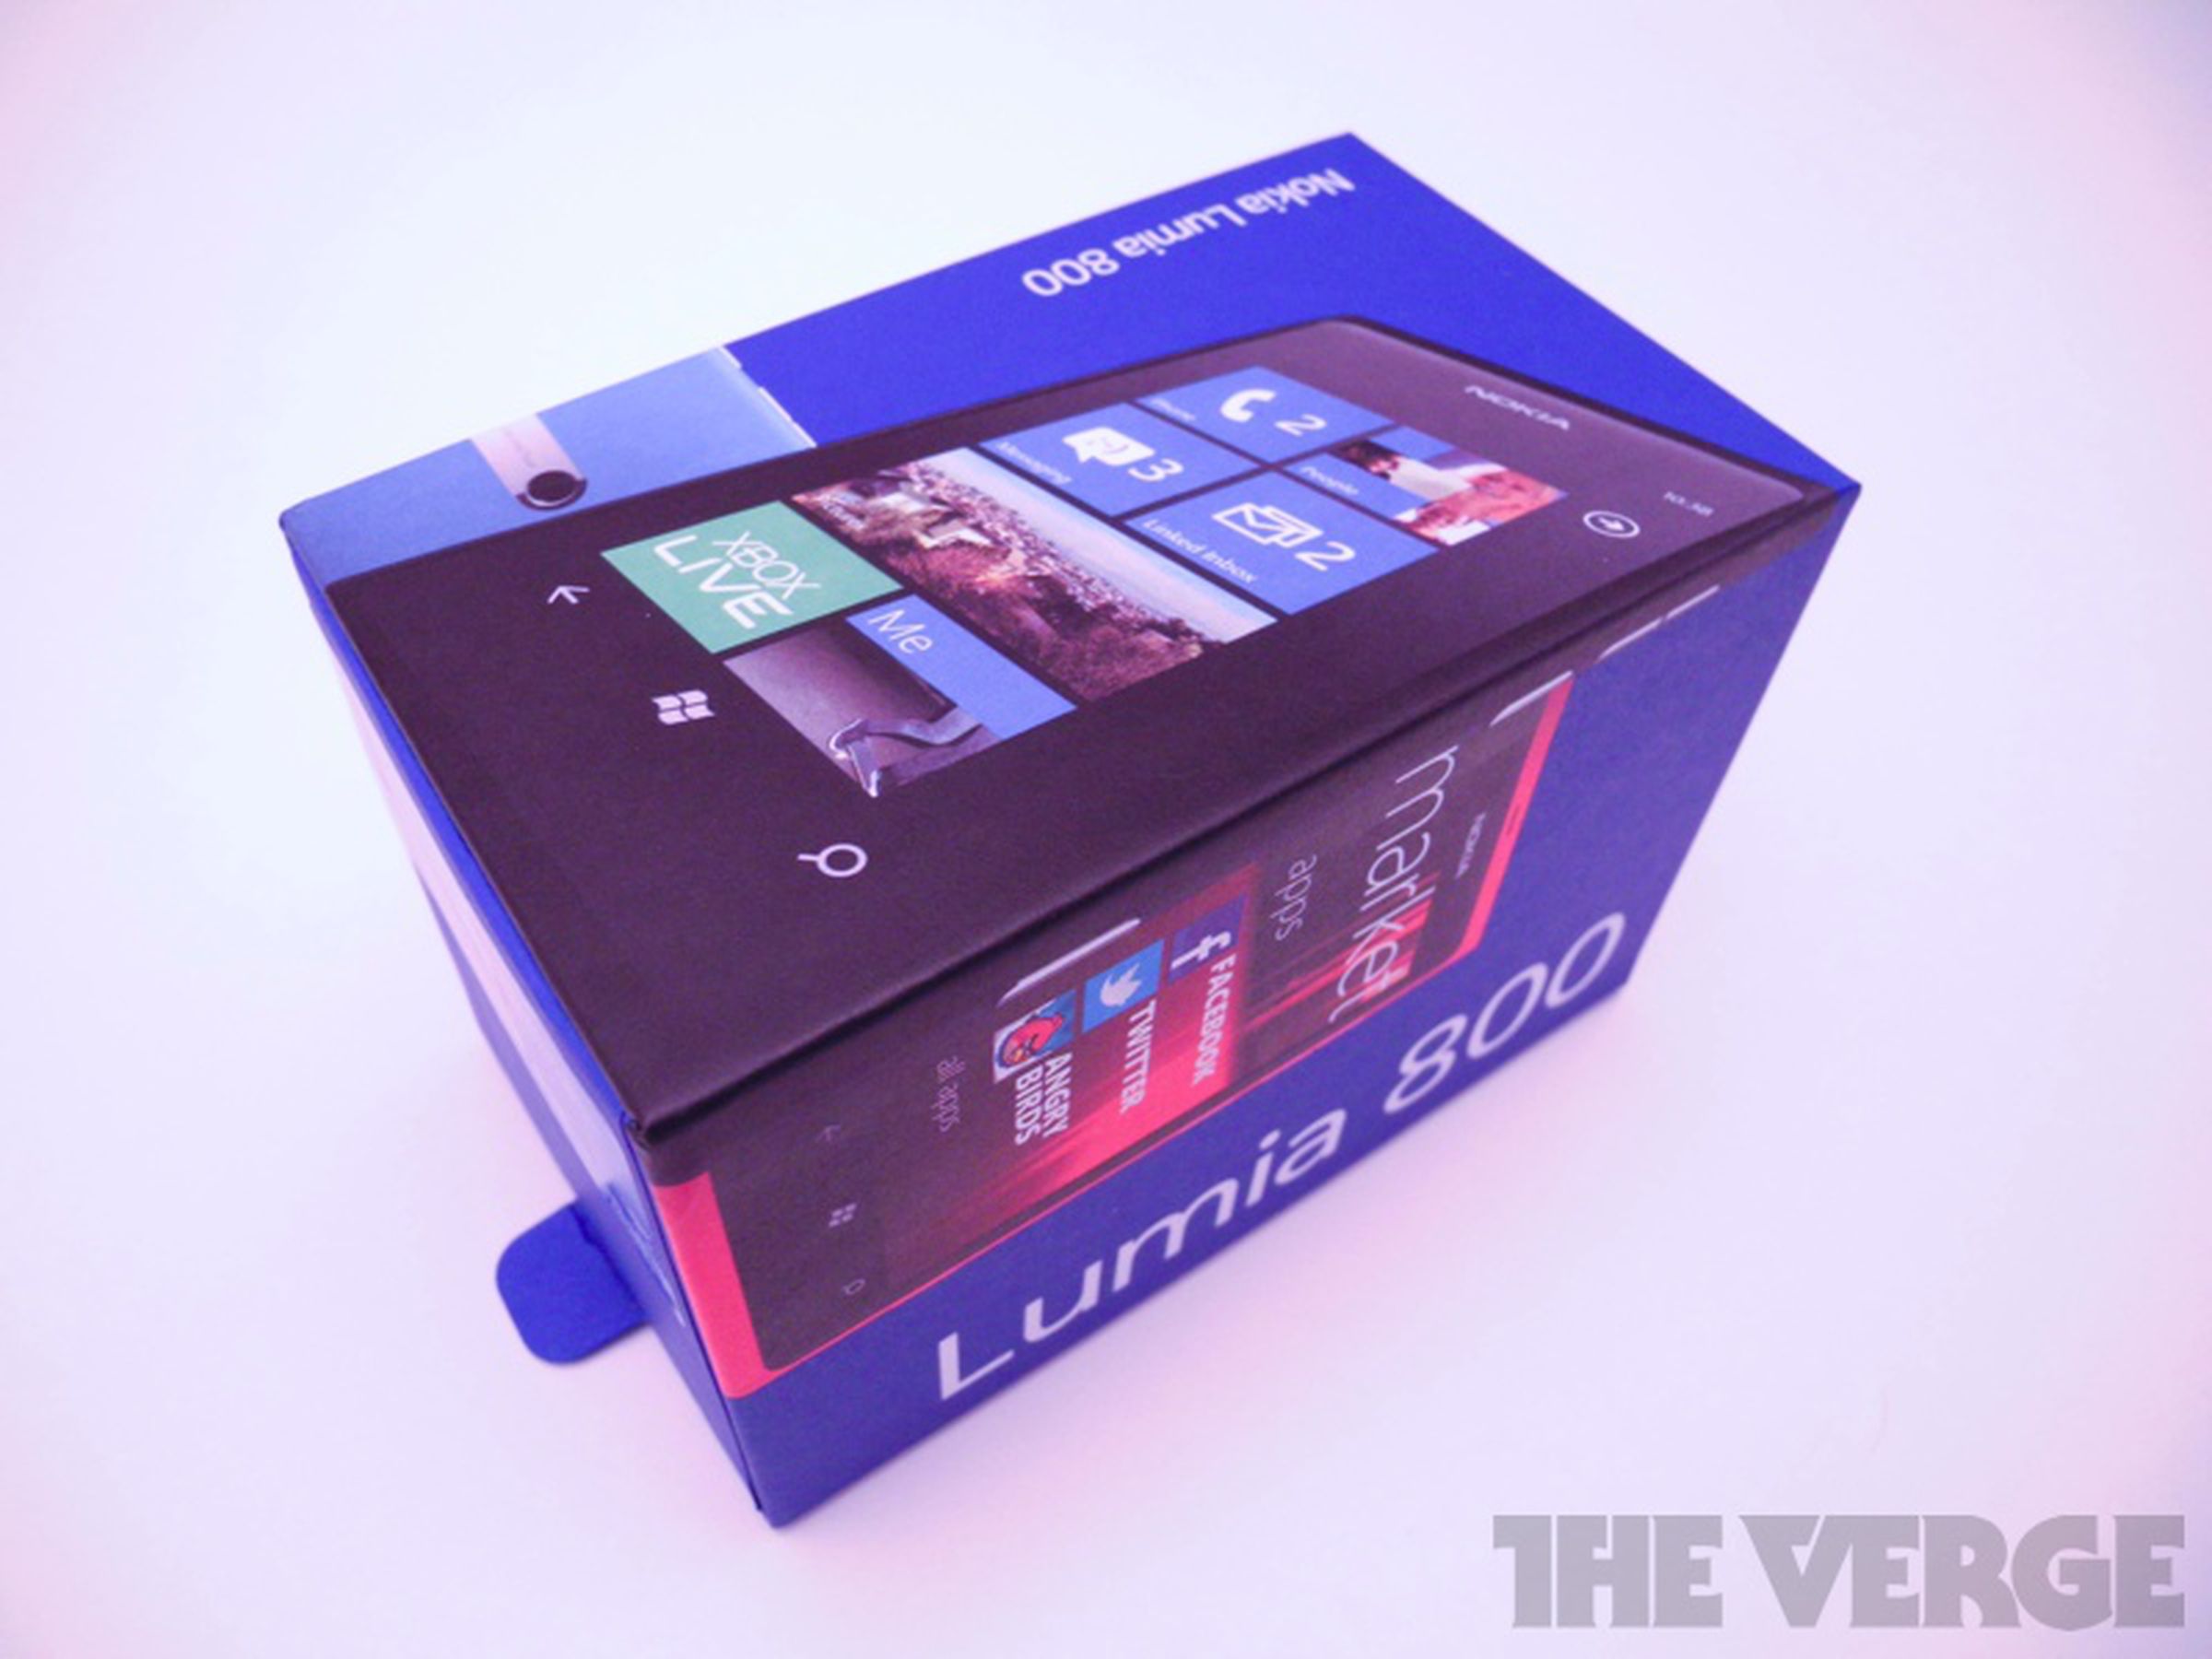 Nokia Lumia 800 retail box photos